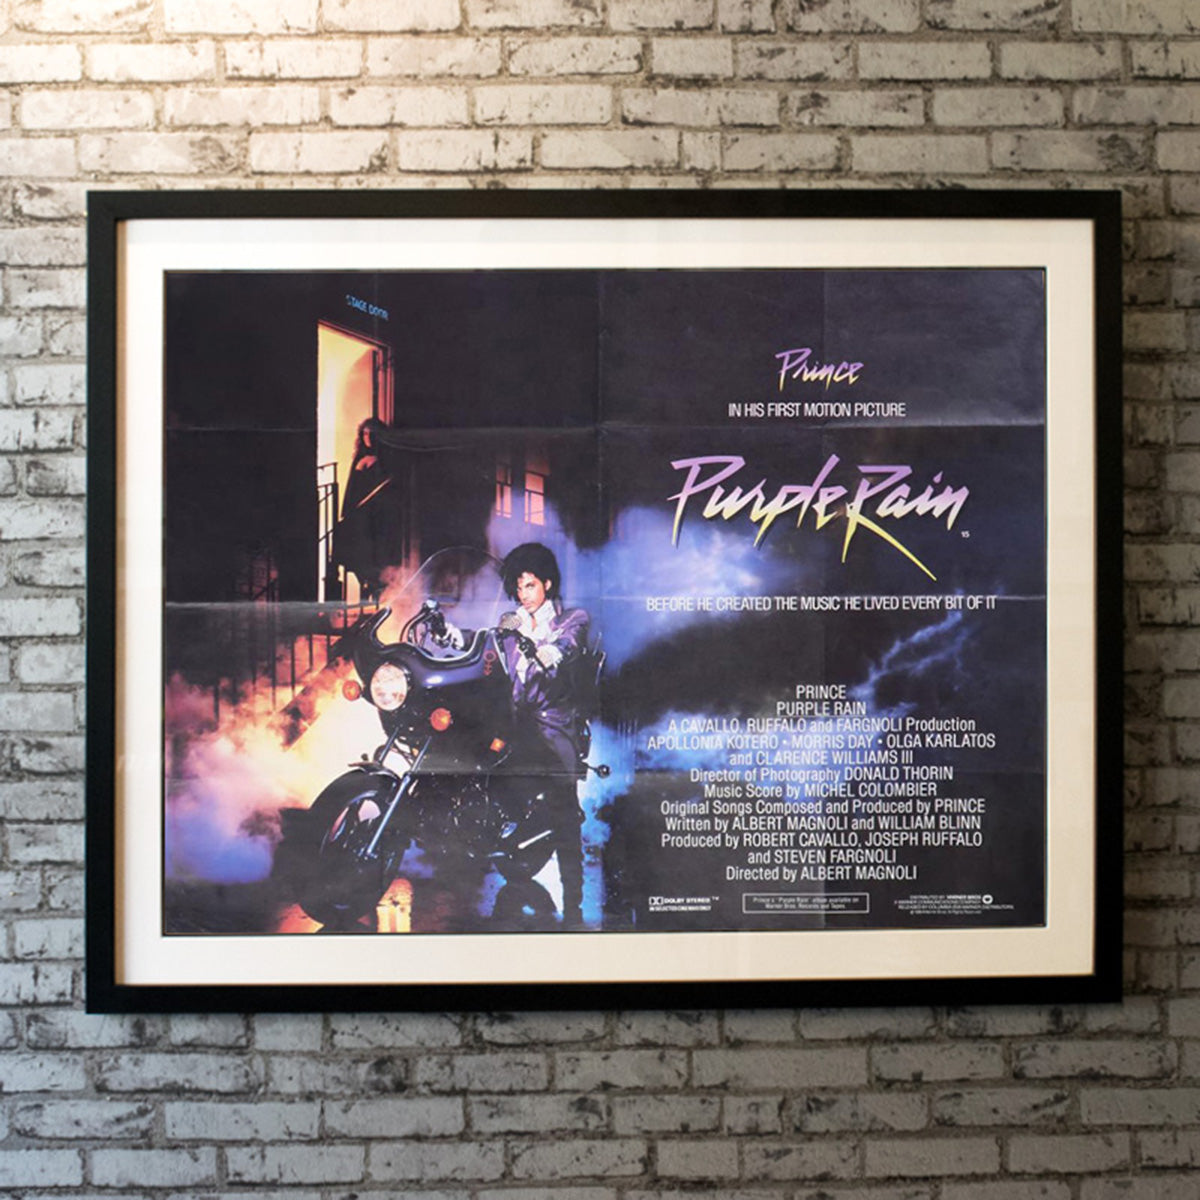 Original Movie Poster of Purple Rain (1984)